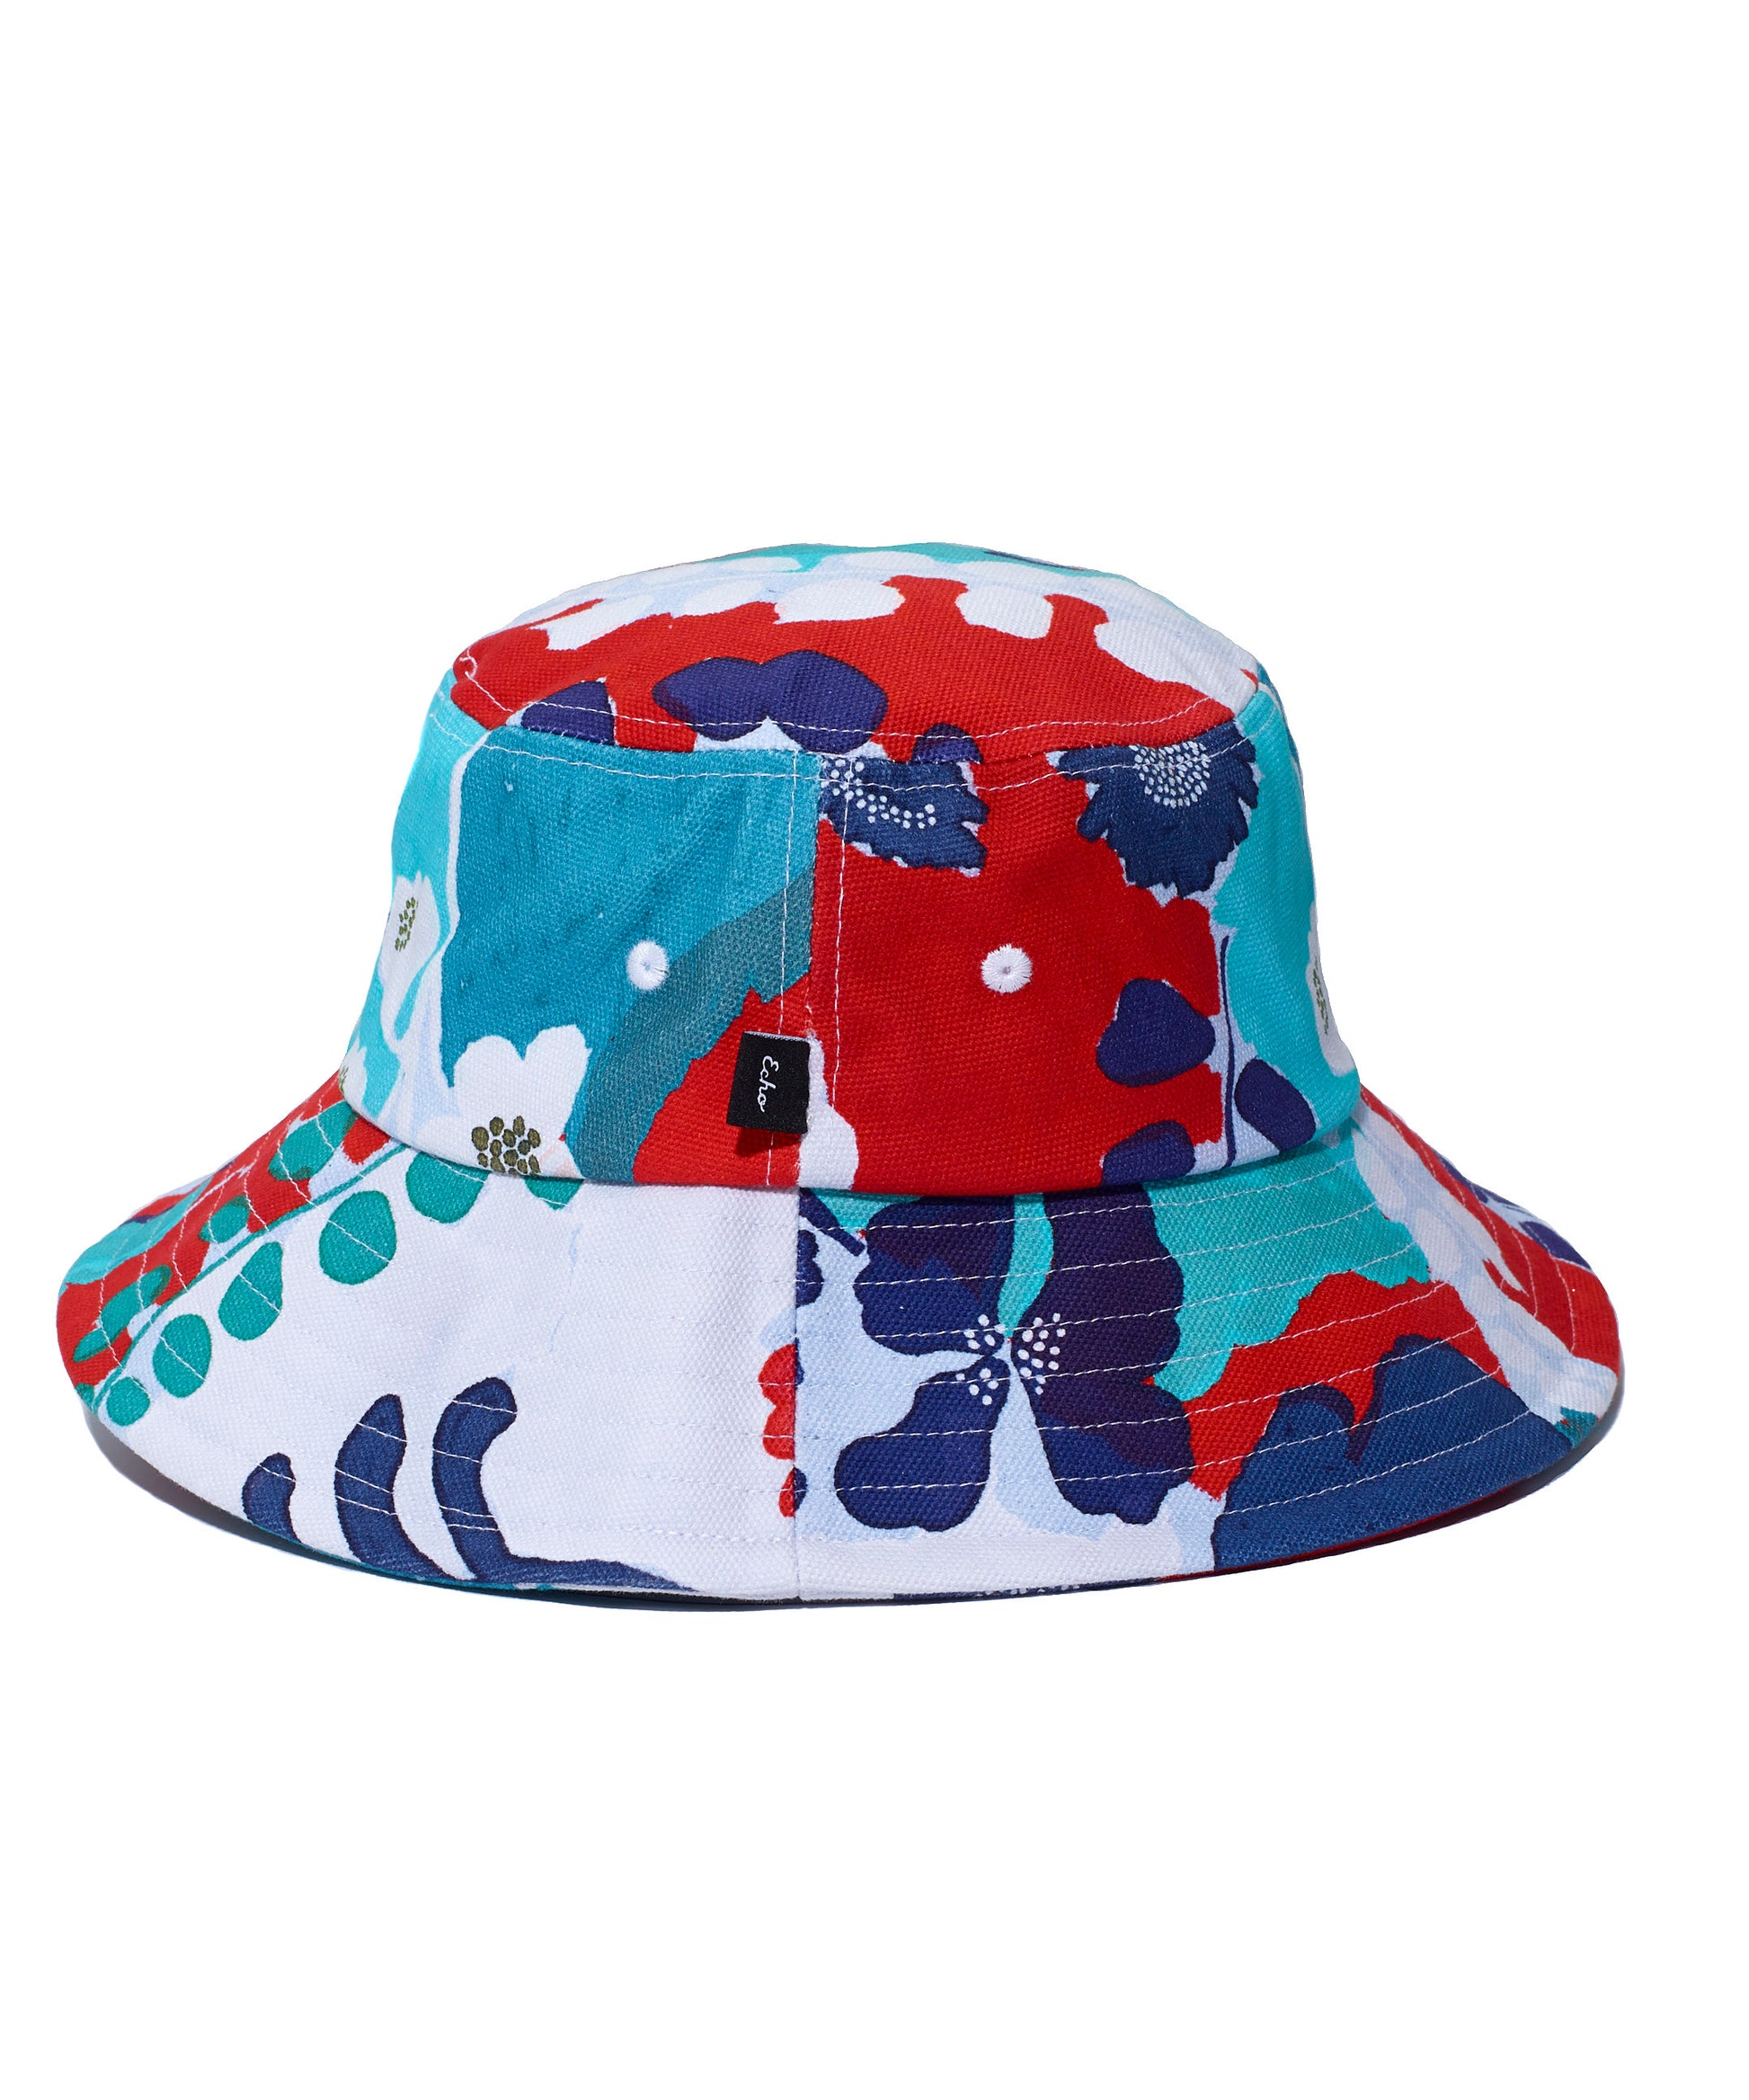 Wild Floral Bucket Hat in color Atlantis